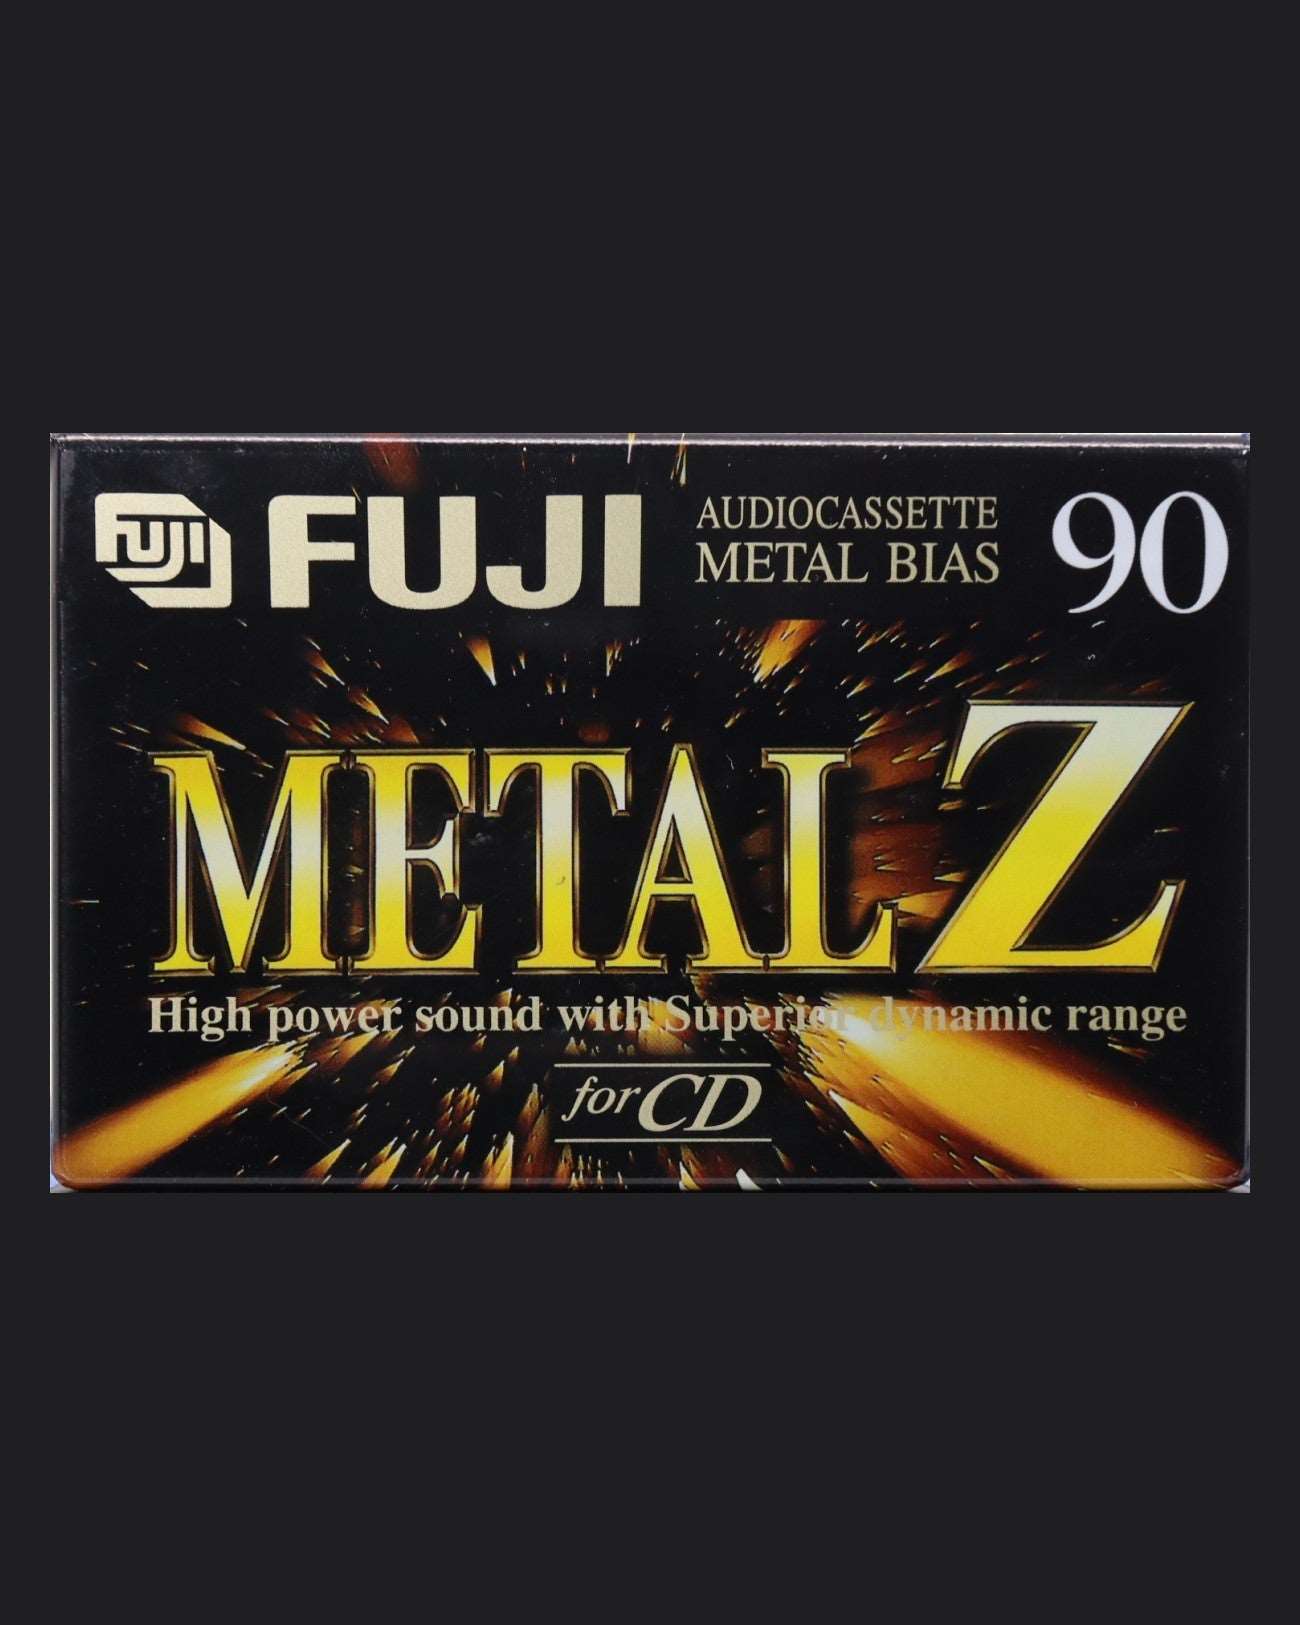 Fuji Metal Z (1995-1997 US)